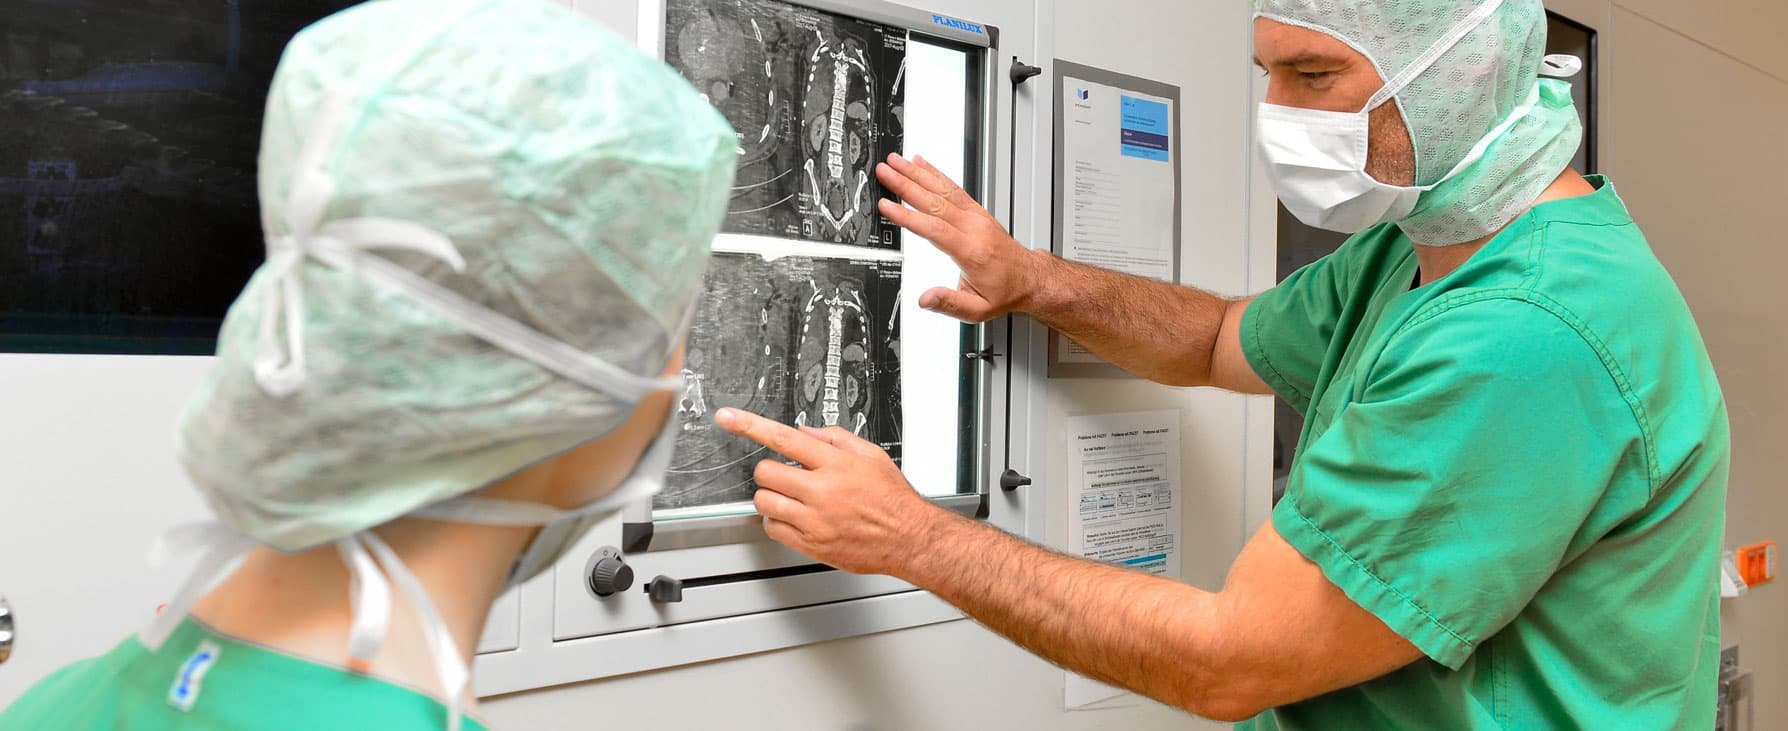 Ein Chirurg in OP-Kleidung demonstriert einer Chirurgin Röntgenbilder